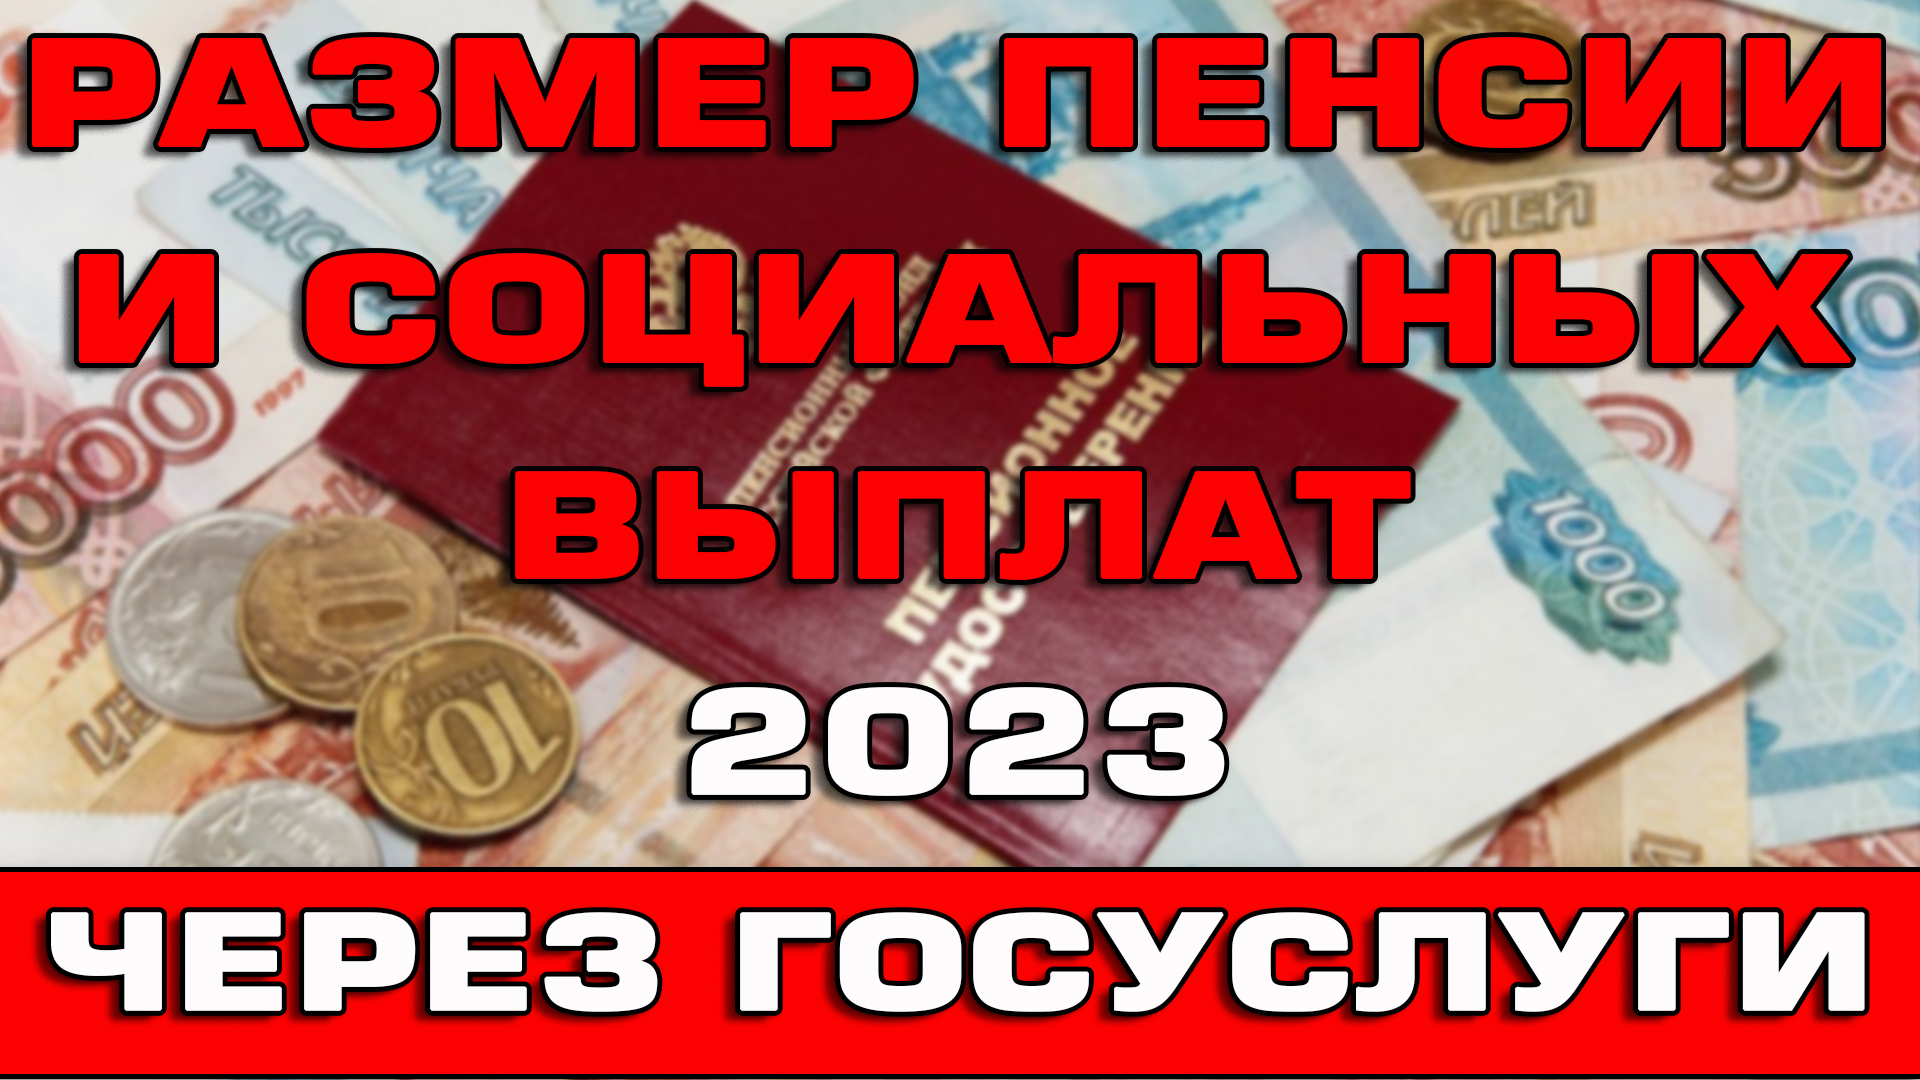 Пенсионный выплаты 2023. Выплаты на детей в 2023. Соцвыплаты в 2023 году в Казахстане. Новые пособия на детей в 2023 году. Пособие по пенсии в Израиле 2023 году.